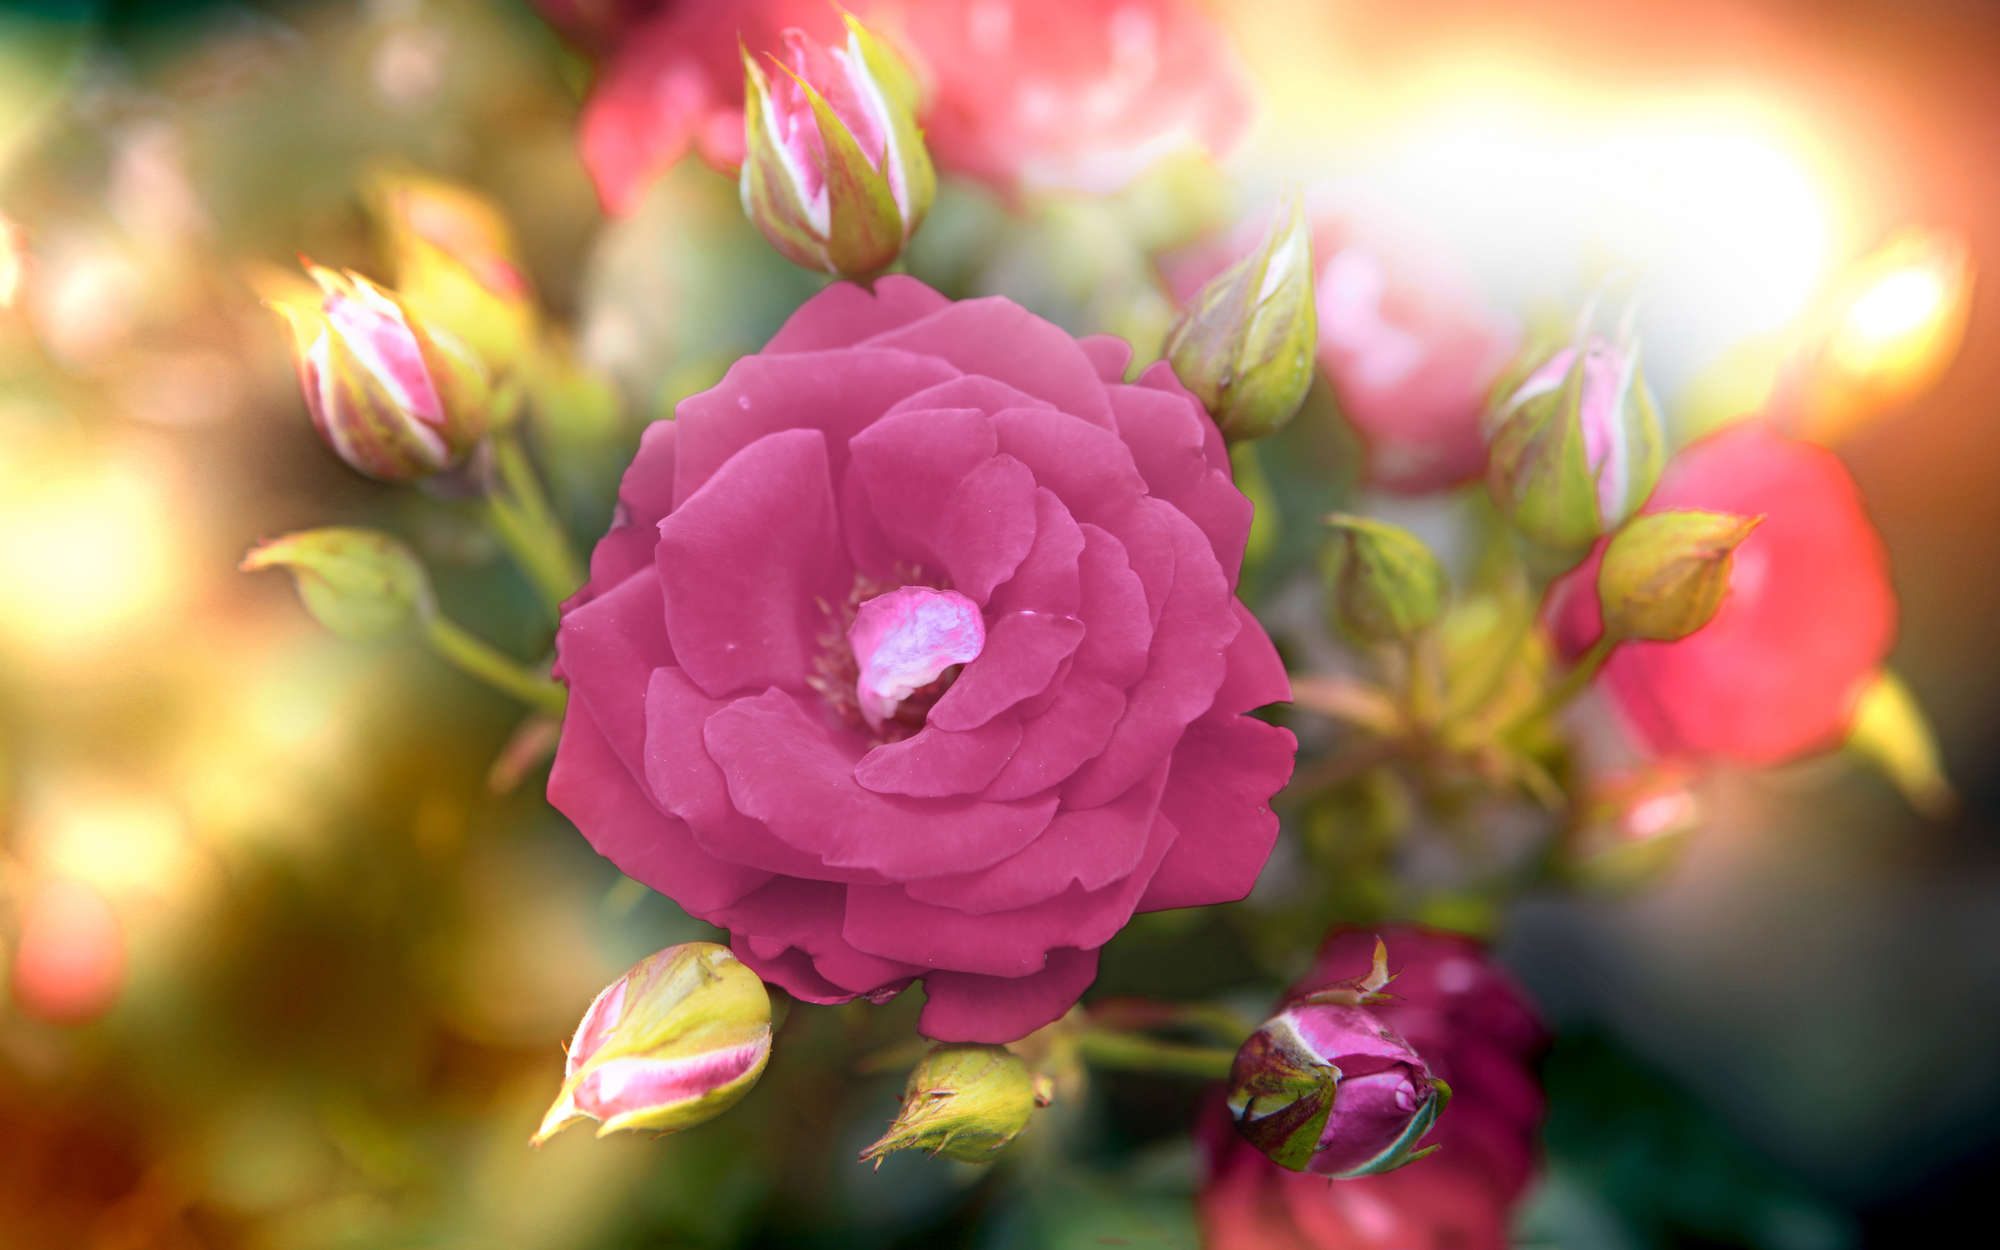             Fototapete Blume mit Blüte in pink – Mattes Glattvlies
        